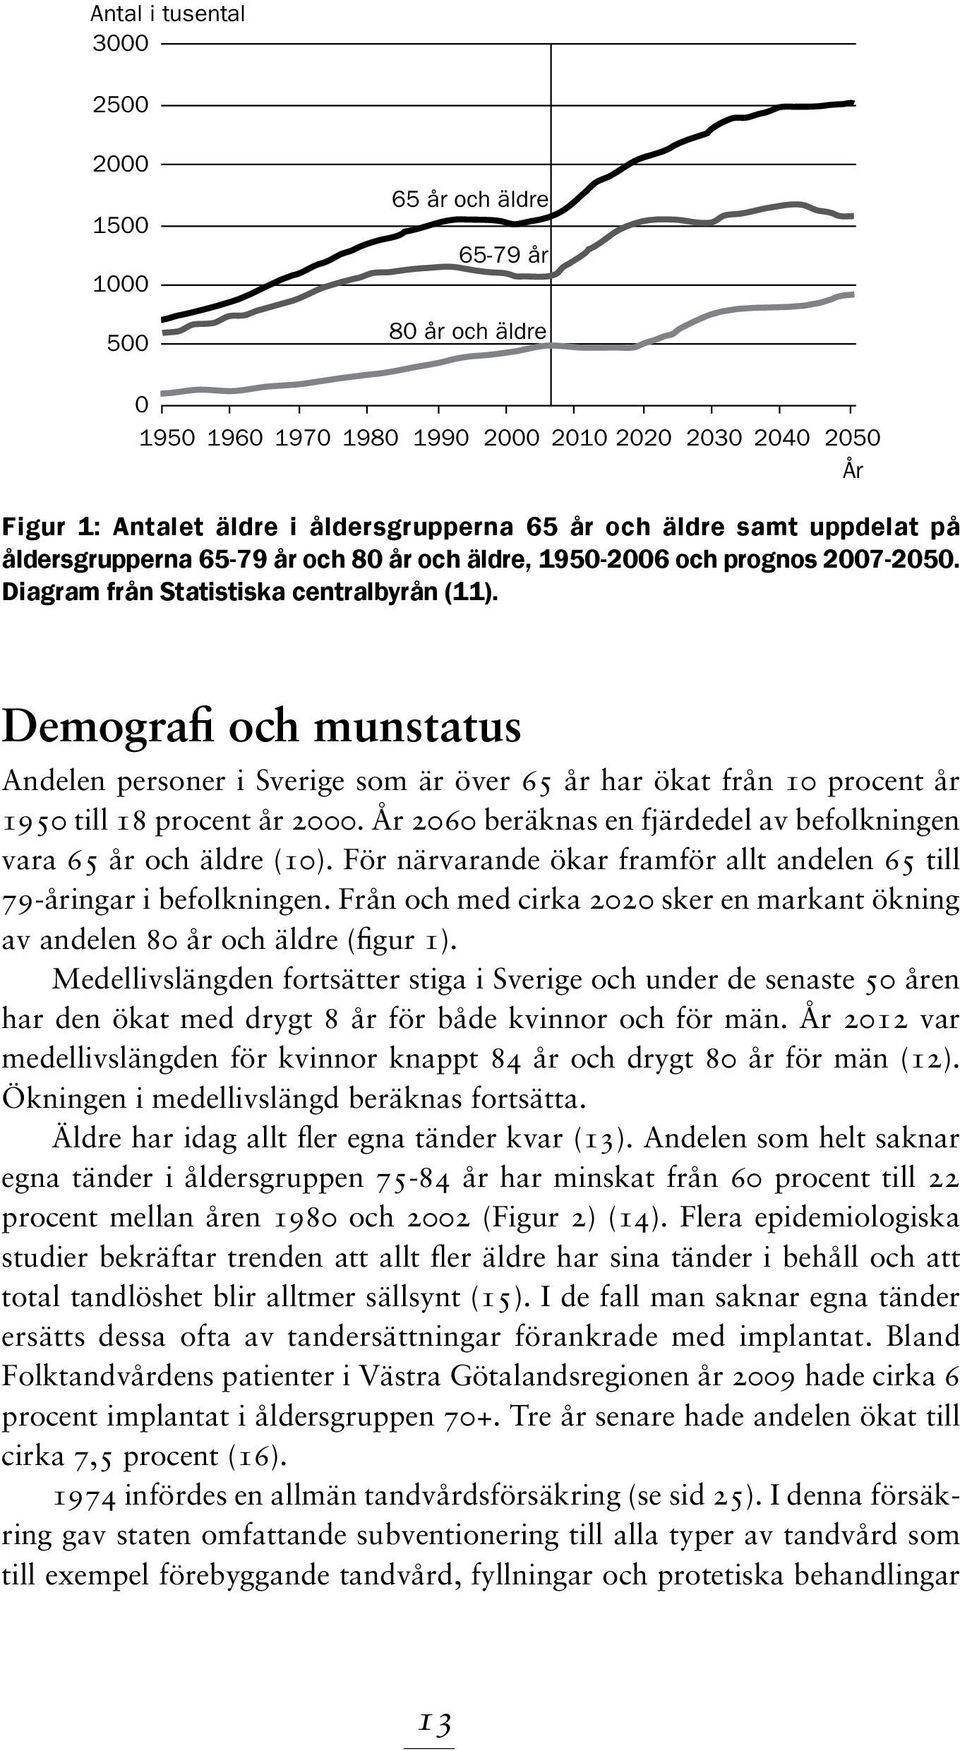 Demografi och munstatus Andelen personer i Sverige som är över 65 år har ökat från 10 procent år 1950 till 18 procent år 2000. År 2060 beräknas en fjärdedel av befolkningen vara 65 år och äldre (10).